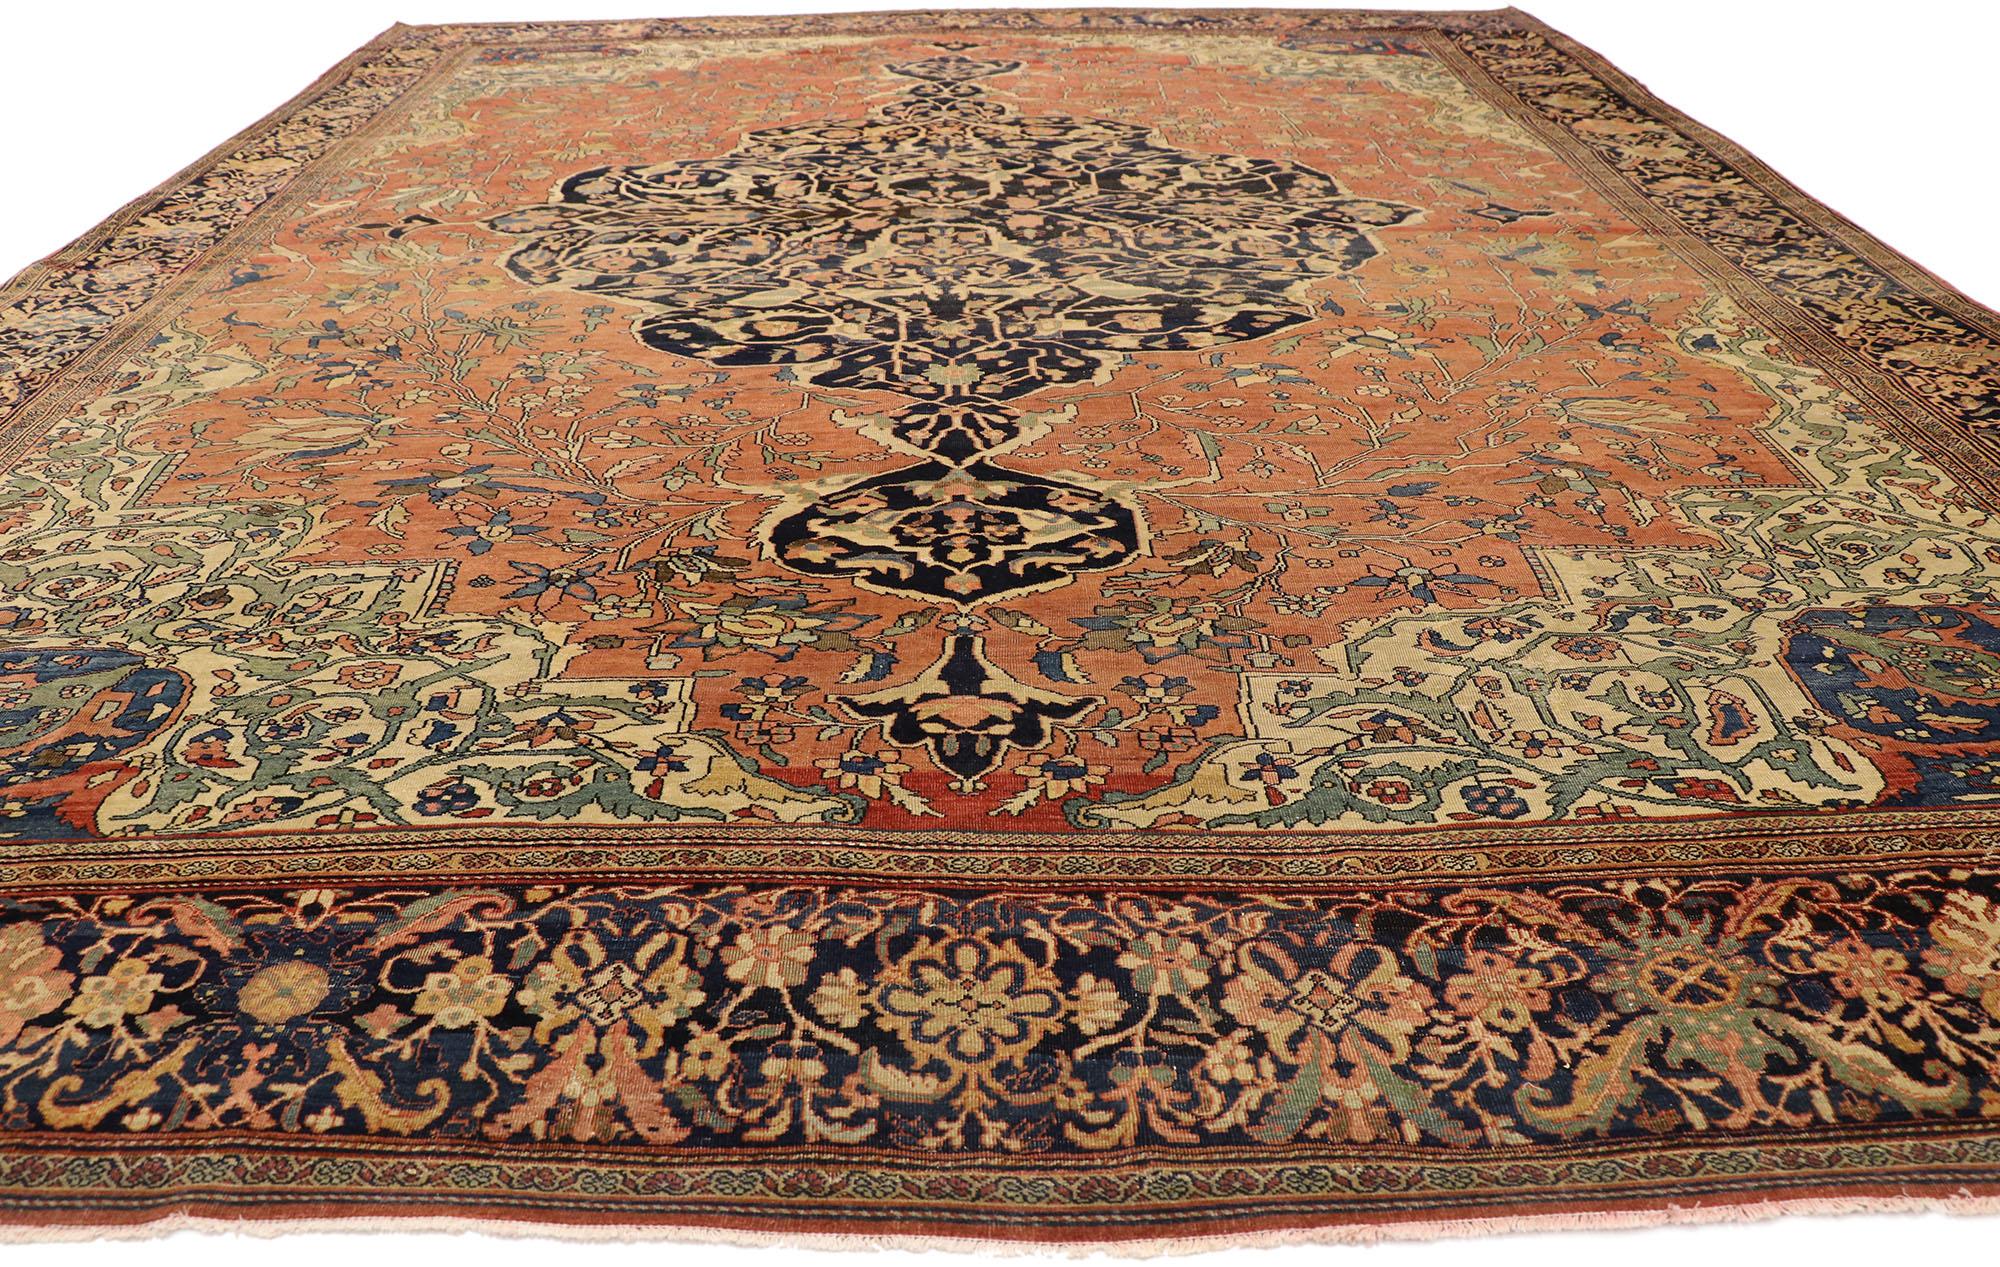 76780 Antiker persischer Farahan Sarouk-Teppich, 10'06 x 13'07. Ein persischer Farahan-Teppich, auch Farahan Sarouk genannt, ist ein handgeknüpfter Teppich aus der Region Farahan im Iran, der für seine komplizierten Muster, seine reiche Farbpalette